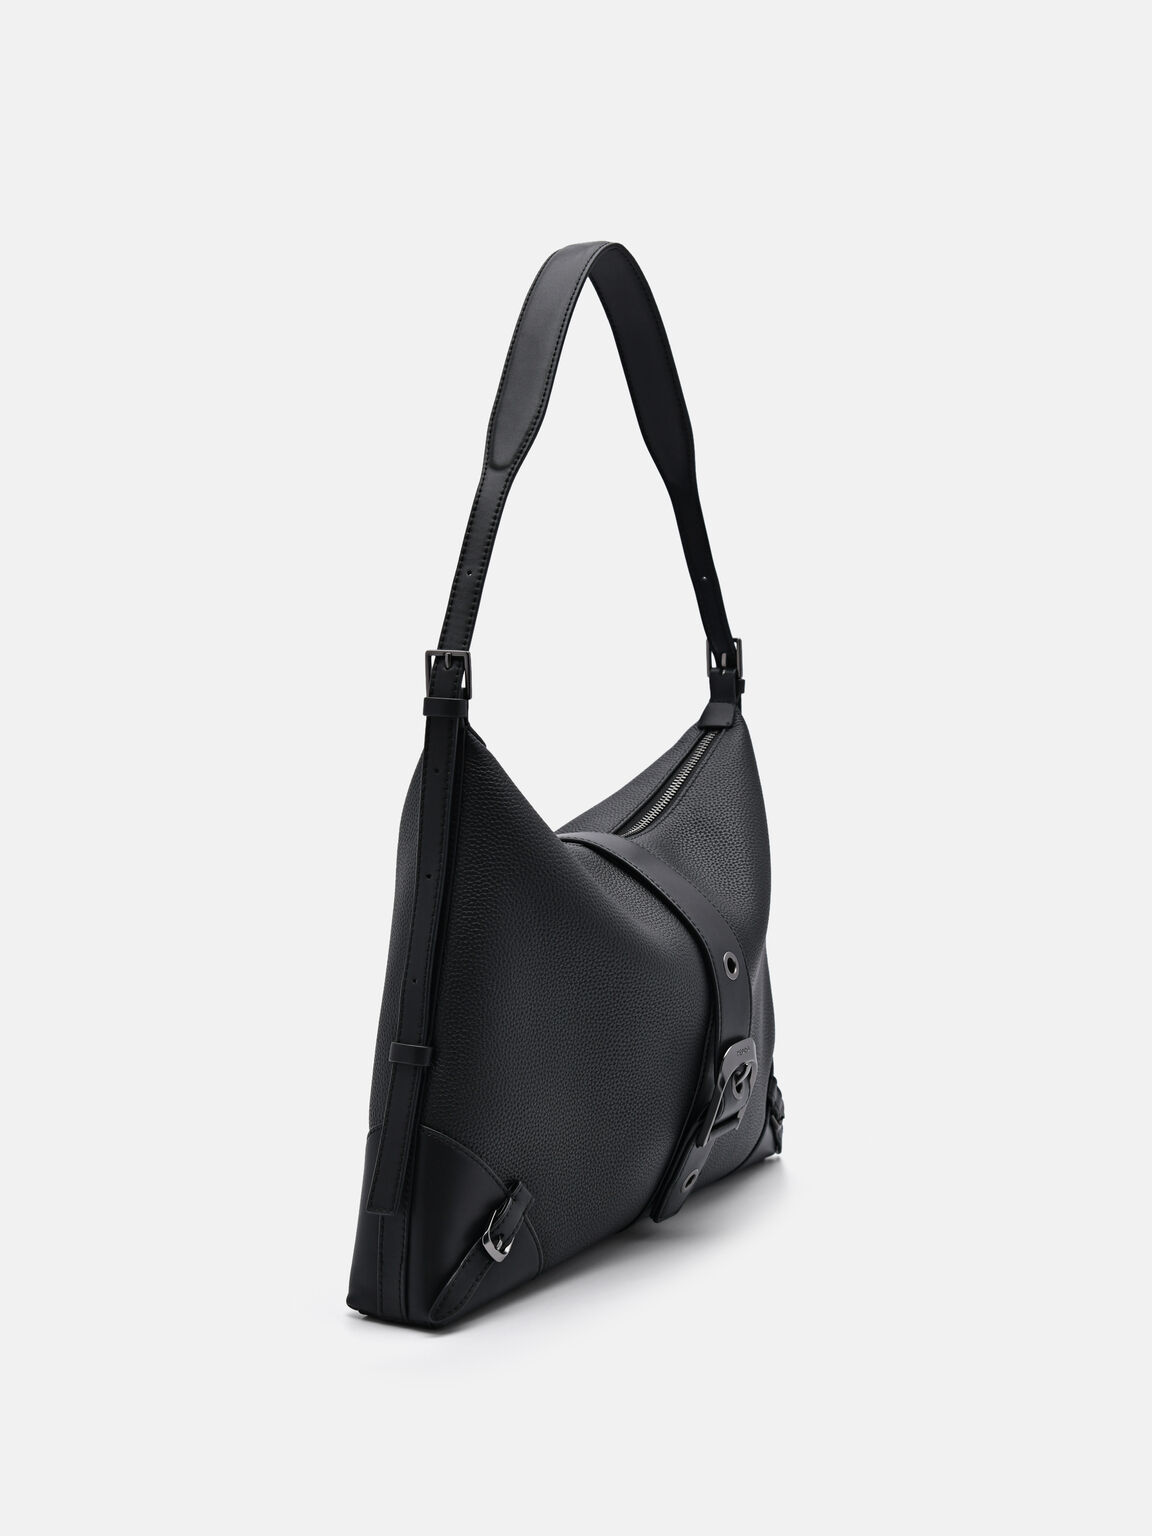 Helix Leather Hobo Bag, Black, hi-res